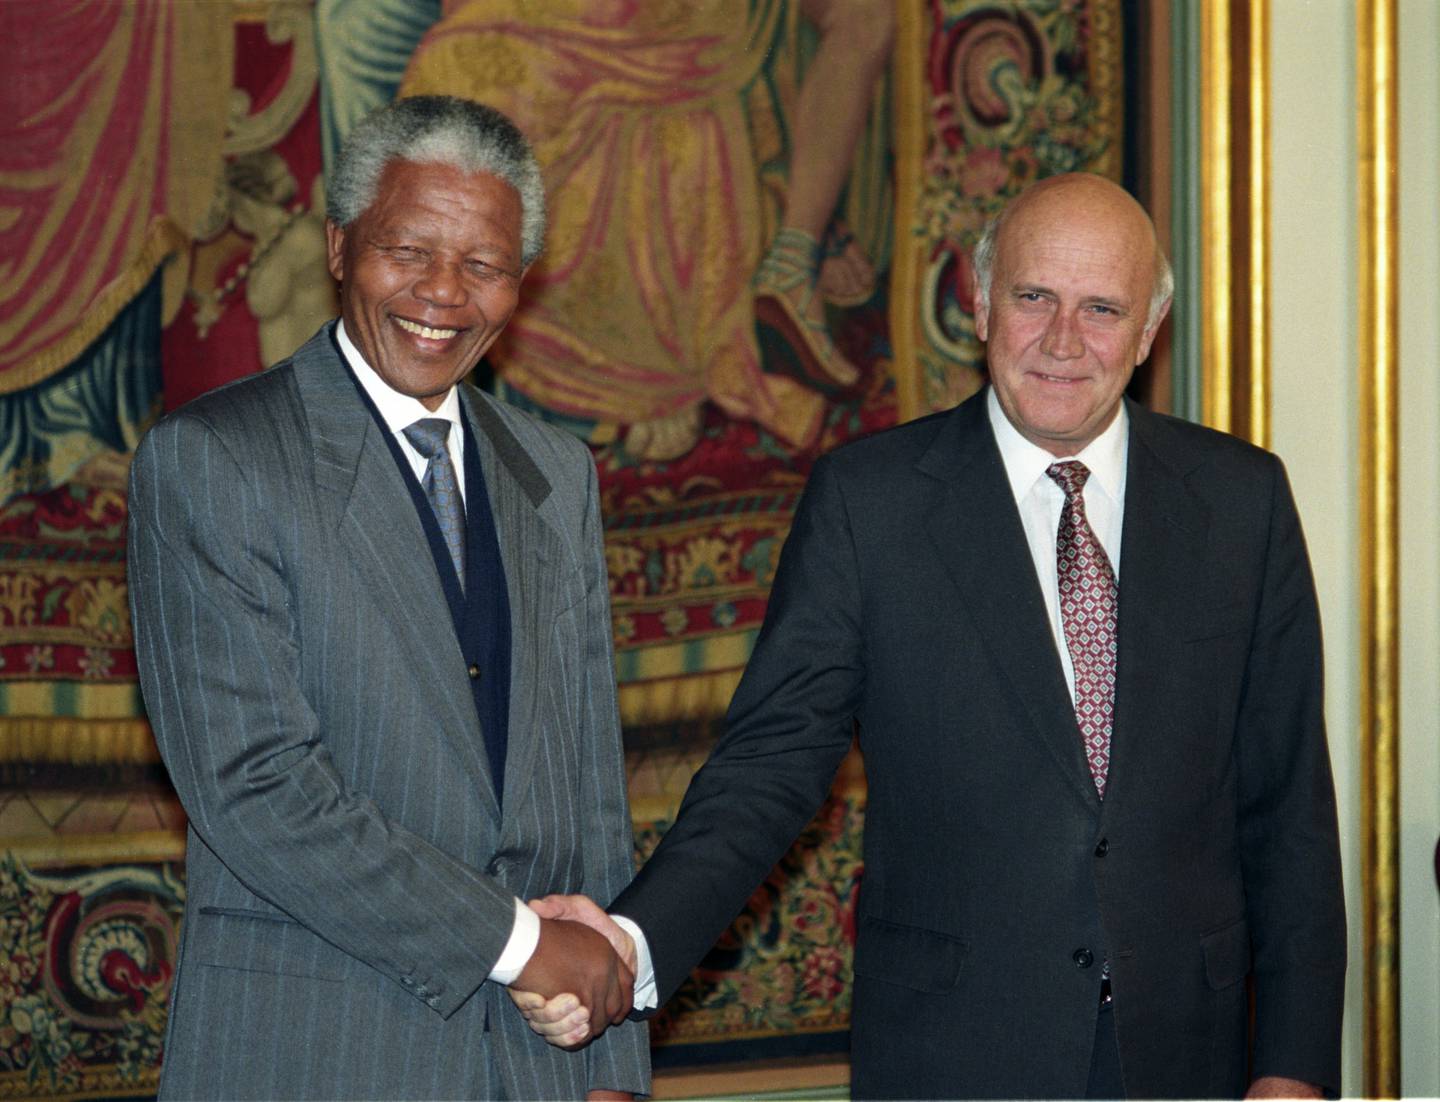 Oslo 199312: Nobels fredspris 1993 til Nelson Mandela og F.W. de Klerk. Fredsprisvinnerne fotografert sammen, - her på Grand Hotell. Pressekonferanse. Smilende sammen. Utveksler håndtrykk.  FOTO: Jon Eeg / NTB / NTB